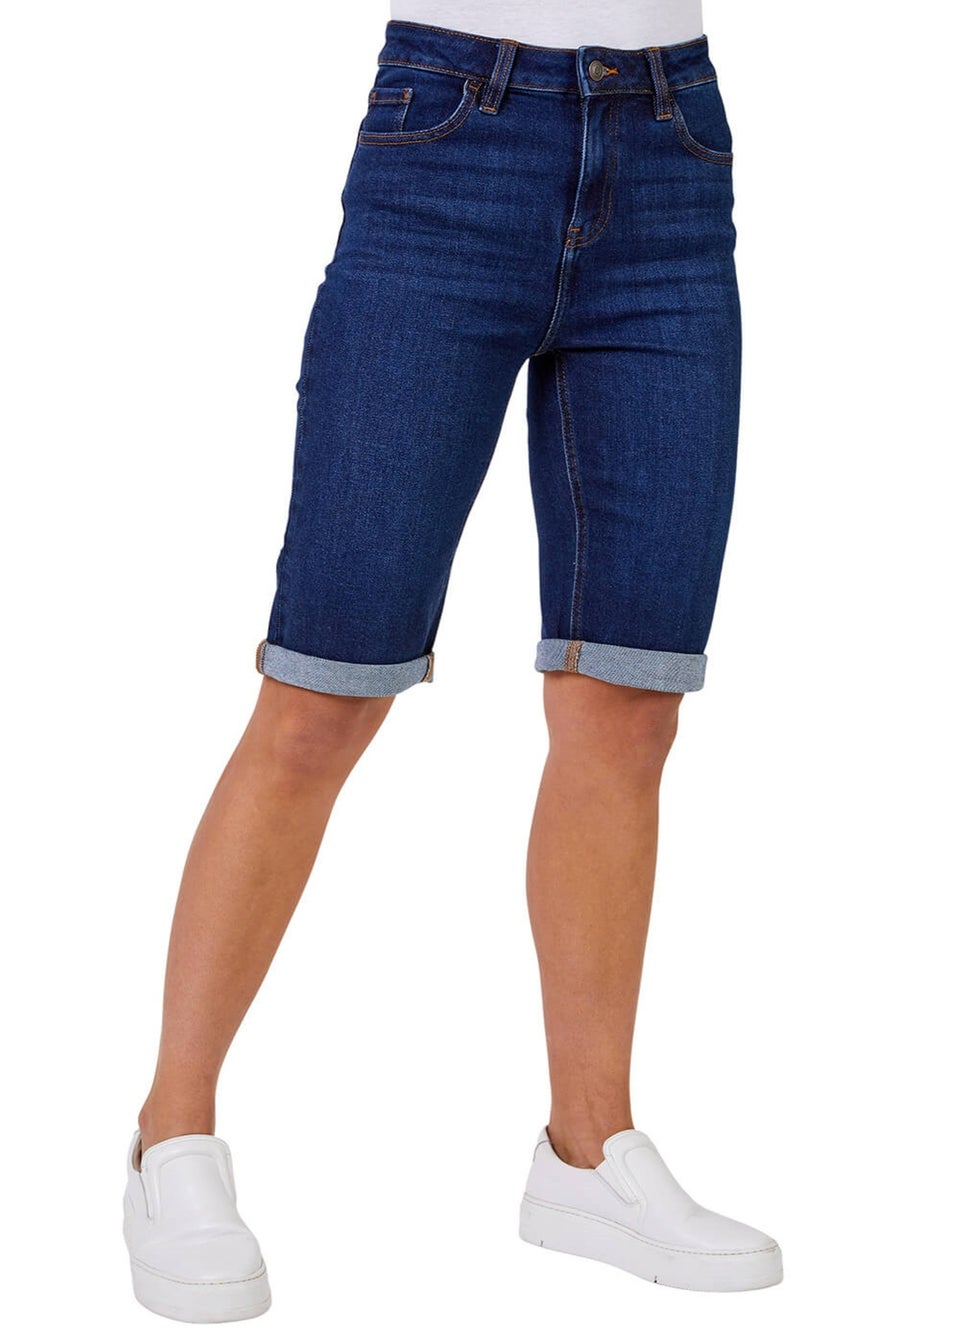 Roman Indigo Essential Stretch Knee Length Shorts